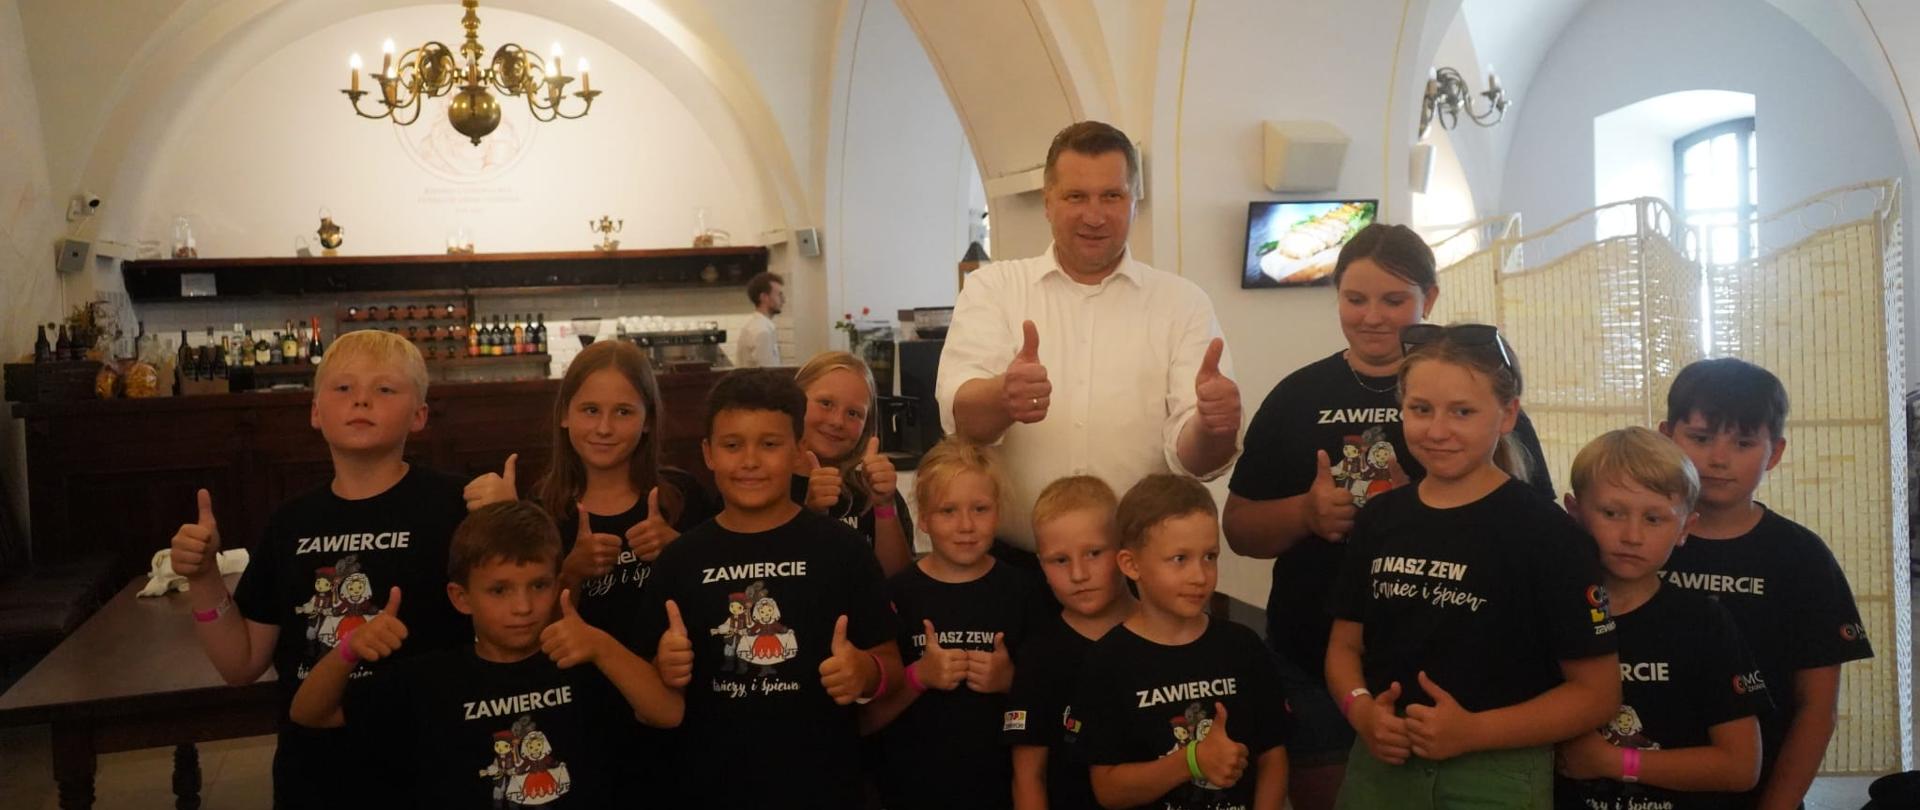 Grupa dzieci z mężczyzną pozuje do zdjęcia wyciągając kciuki w geście ok. Dzieci ubrane są w koszulki z napisem Zawiercie.